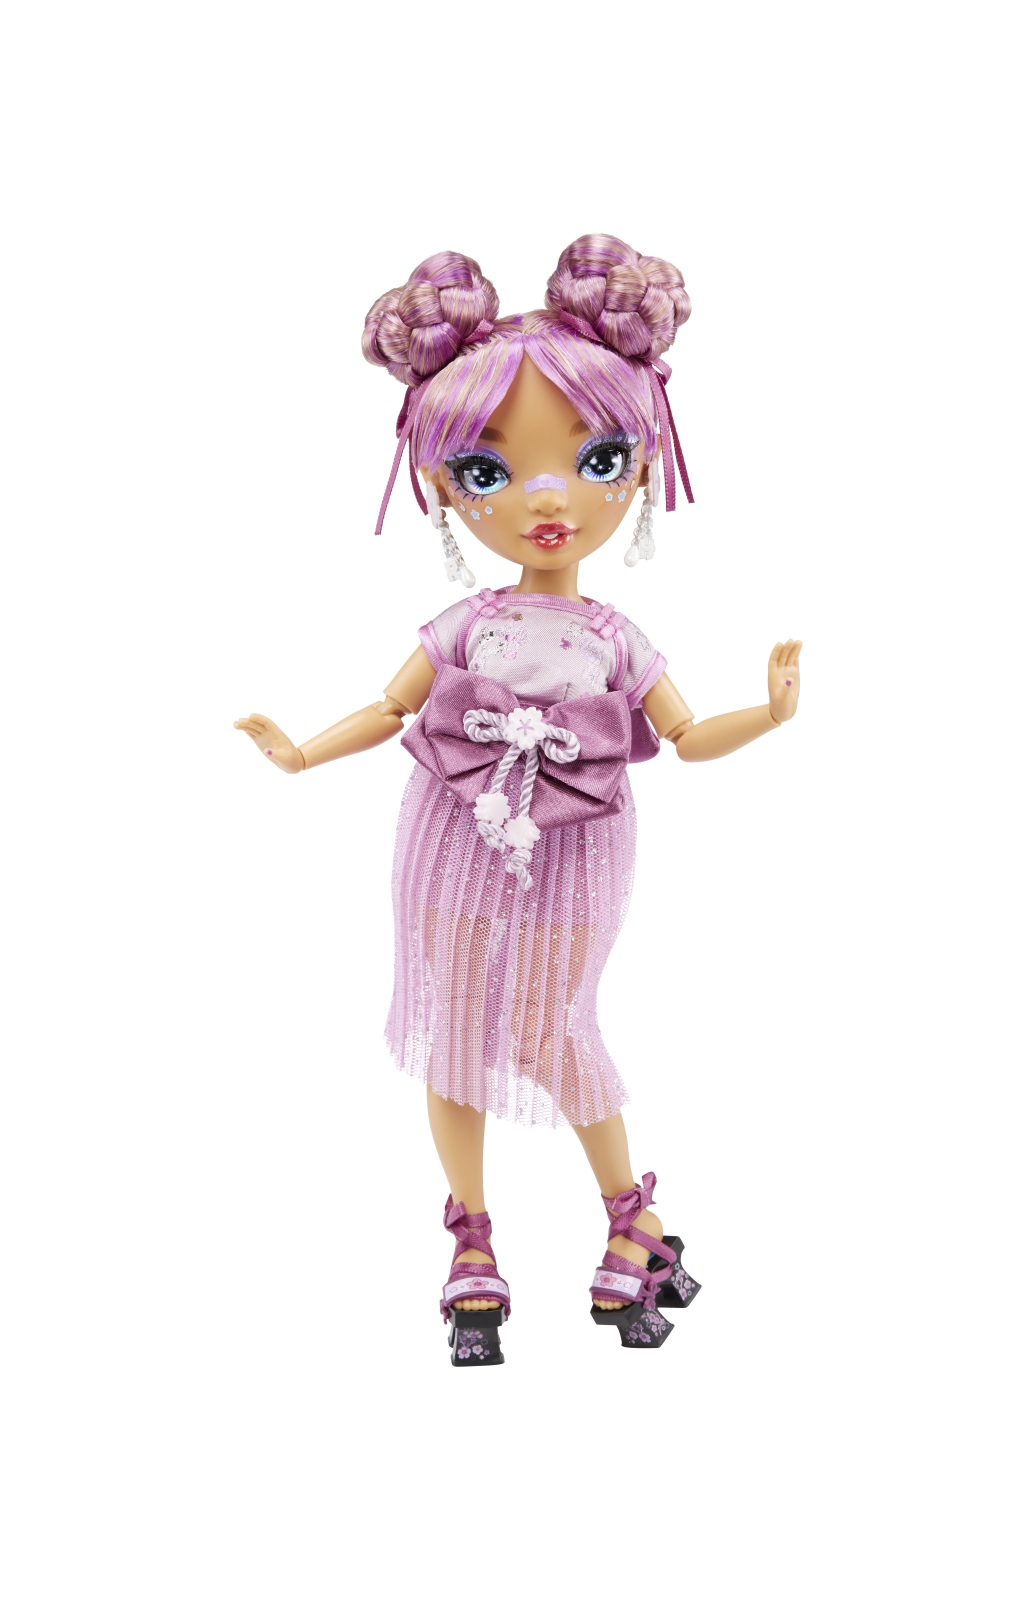 Rainbow high lila yamamoto-bambola alla moda color viola malta-include 2 abiti mix & match con accessori - Rainbow High